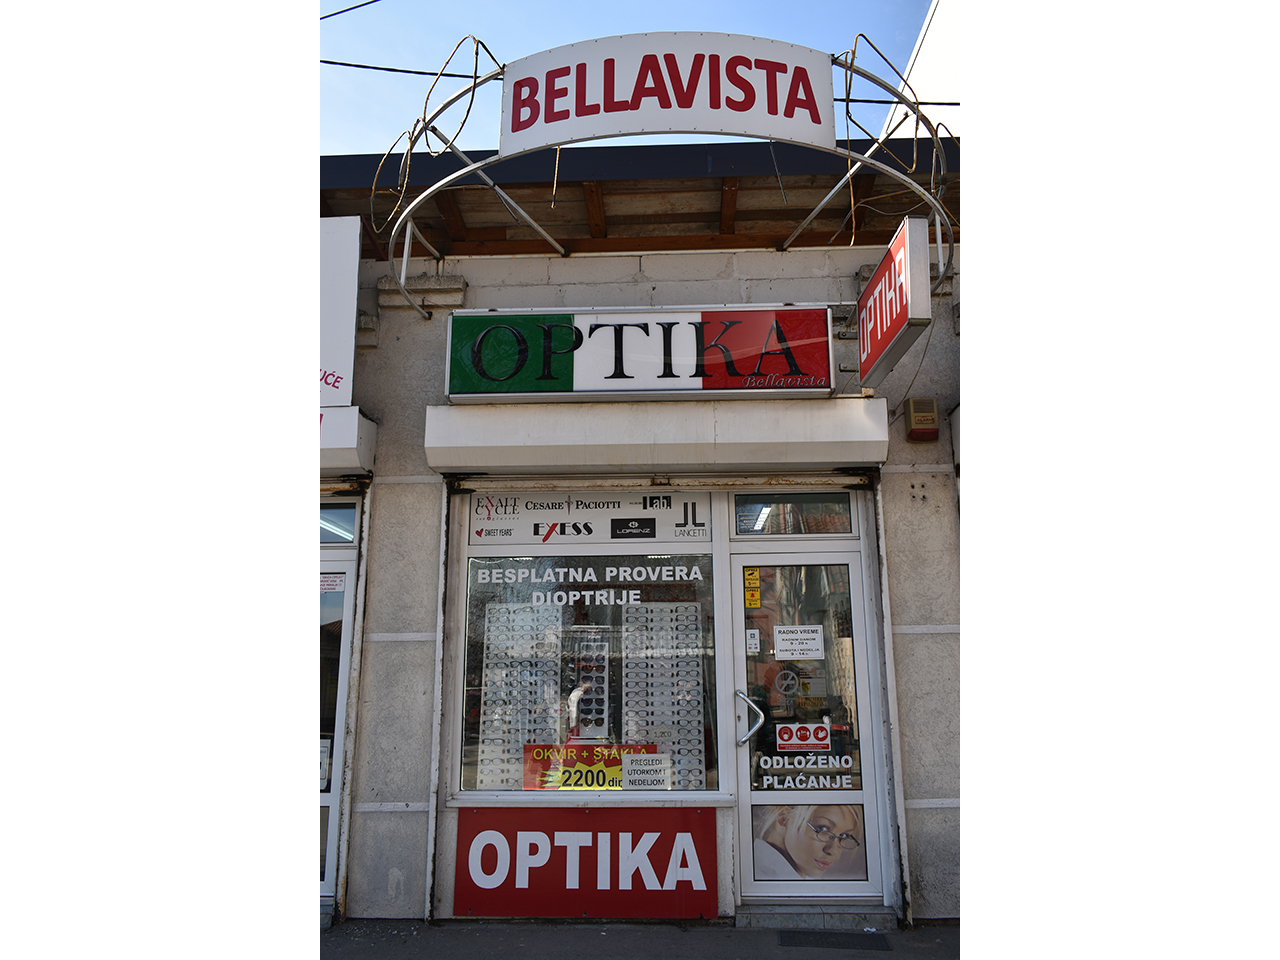 Slika 1 - BELLAVISTA OPTIKA Optika Beograd